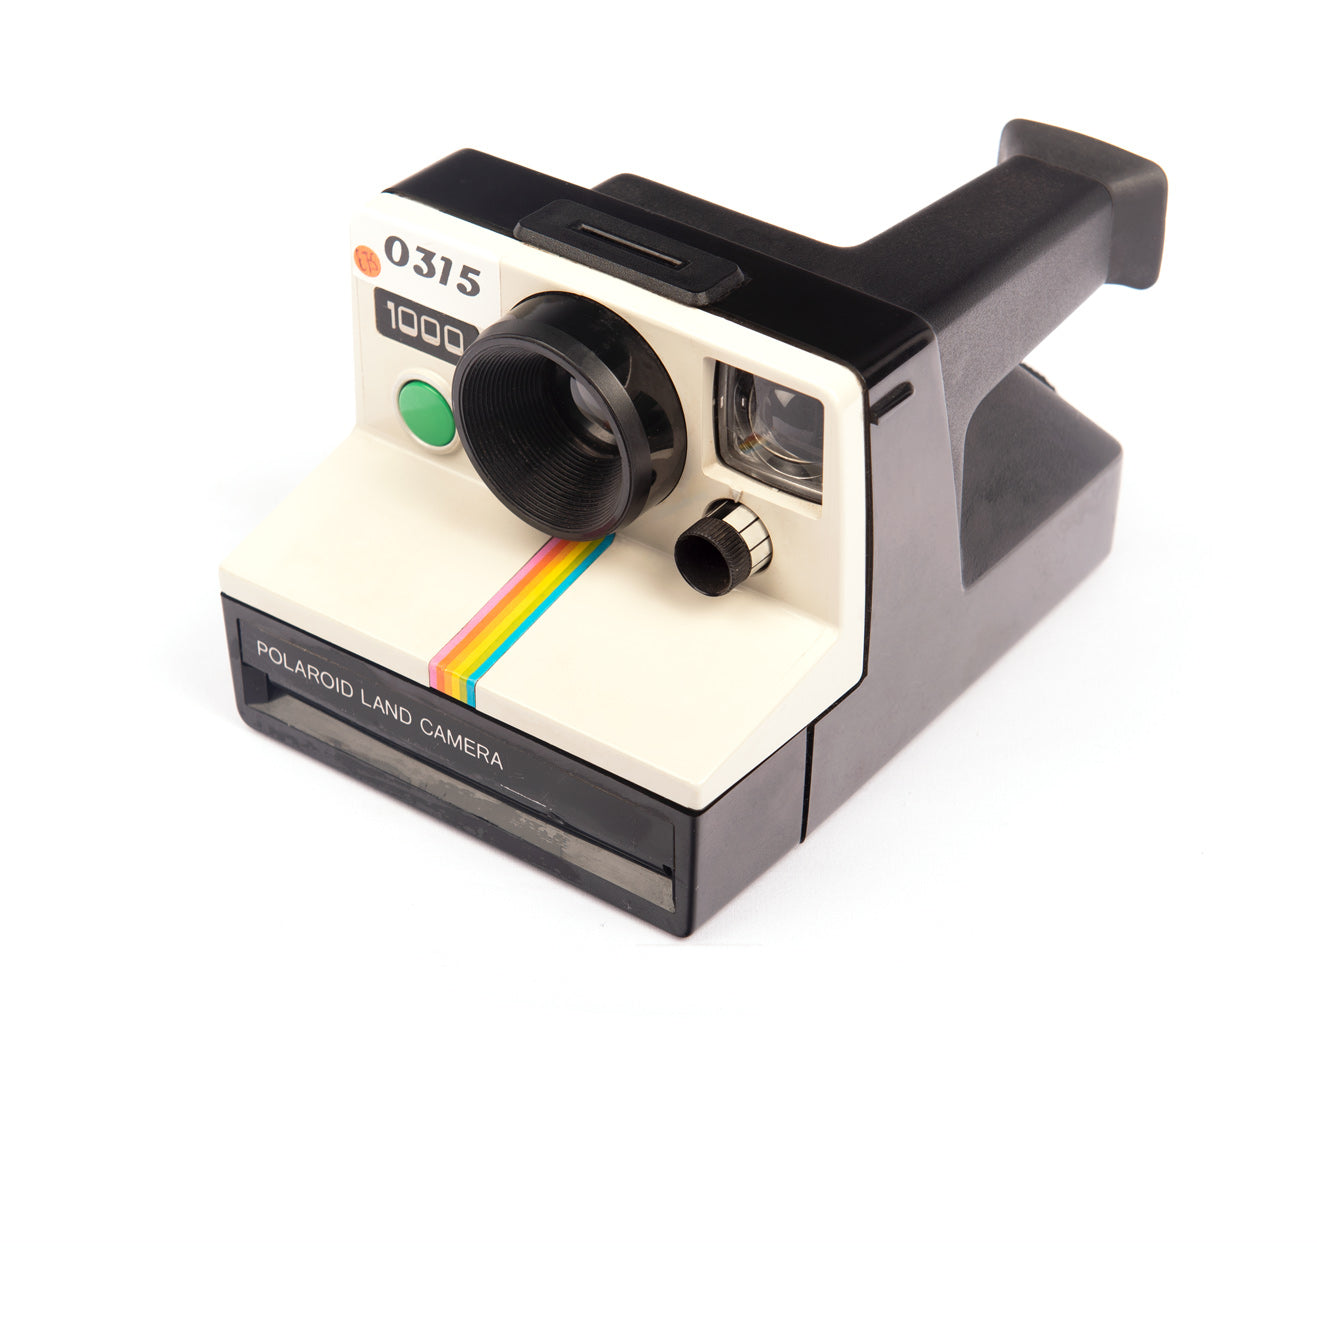 Polaroid Land Camera 1000